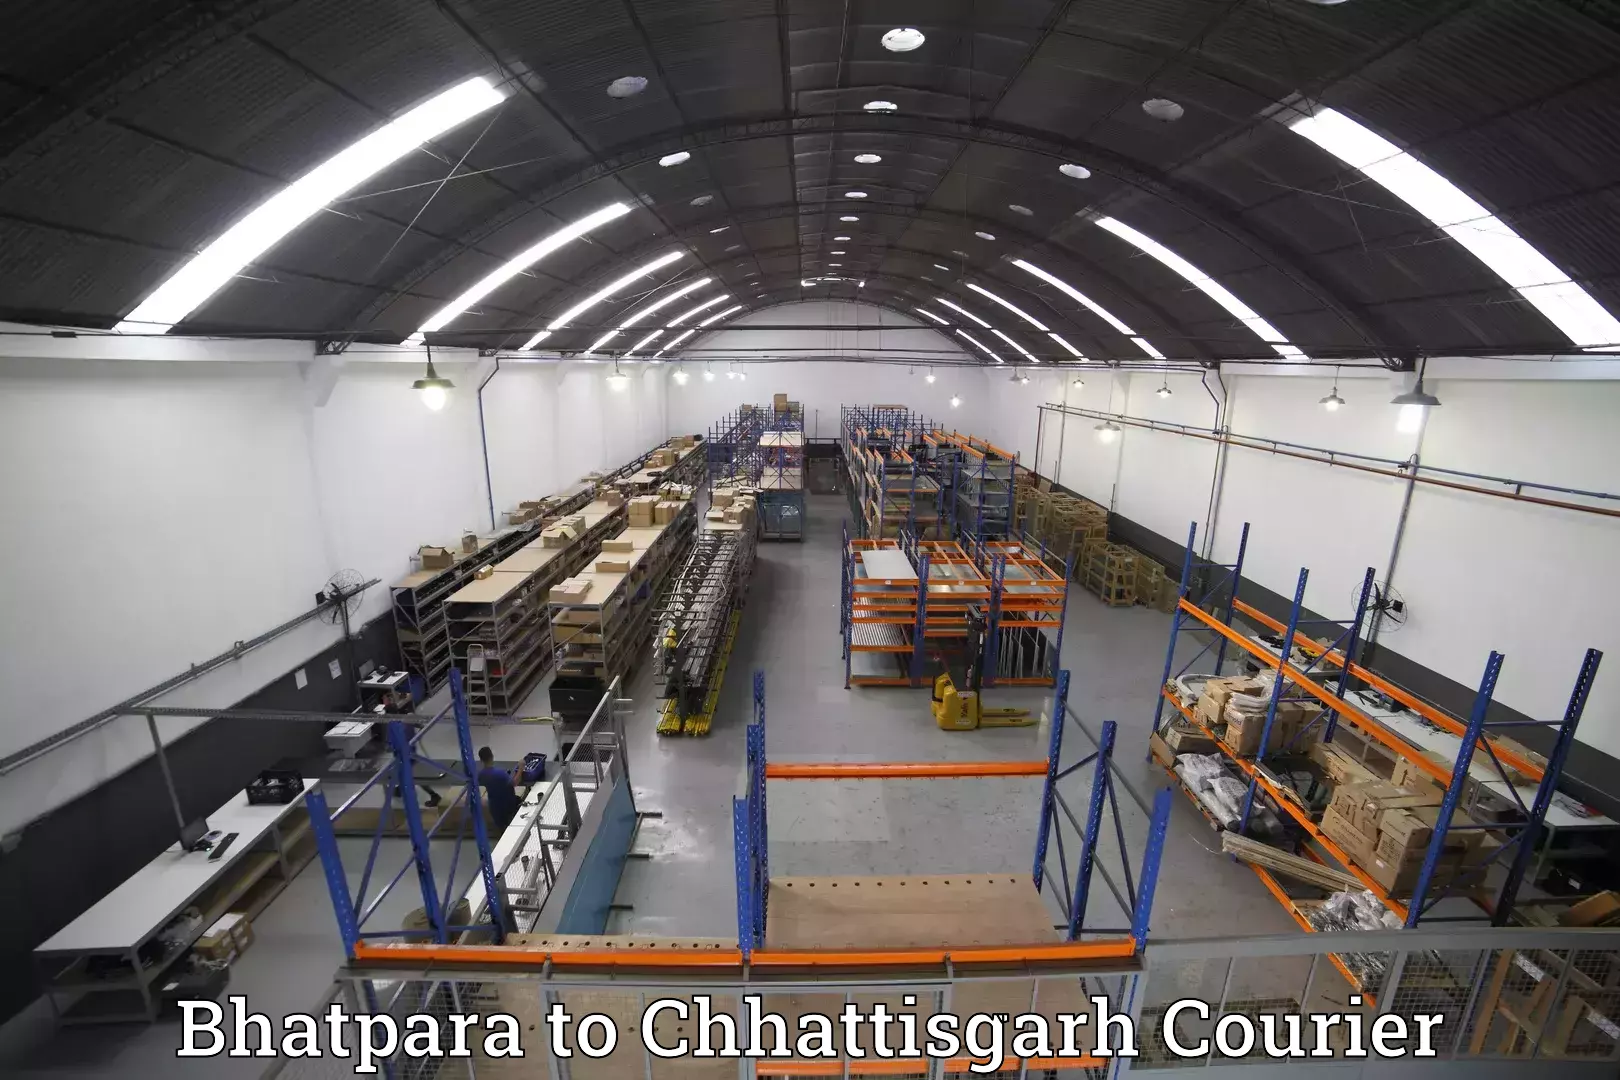 Baggage shipping experience Bhatpara to Narayanpur